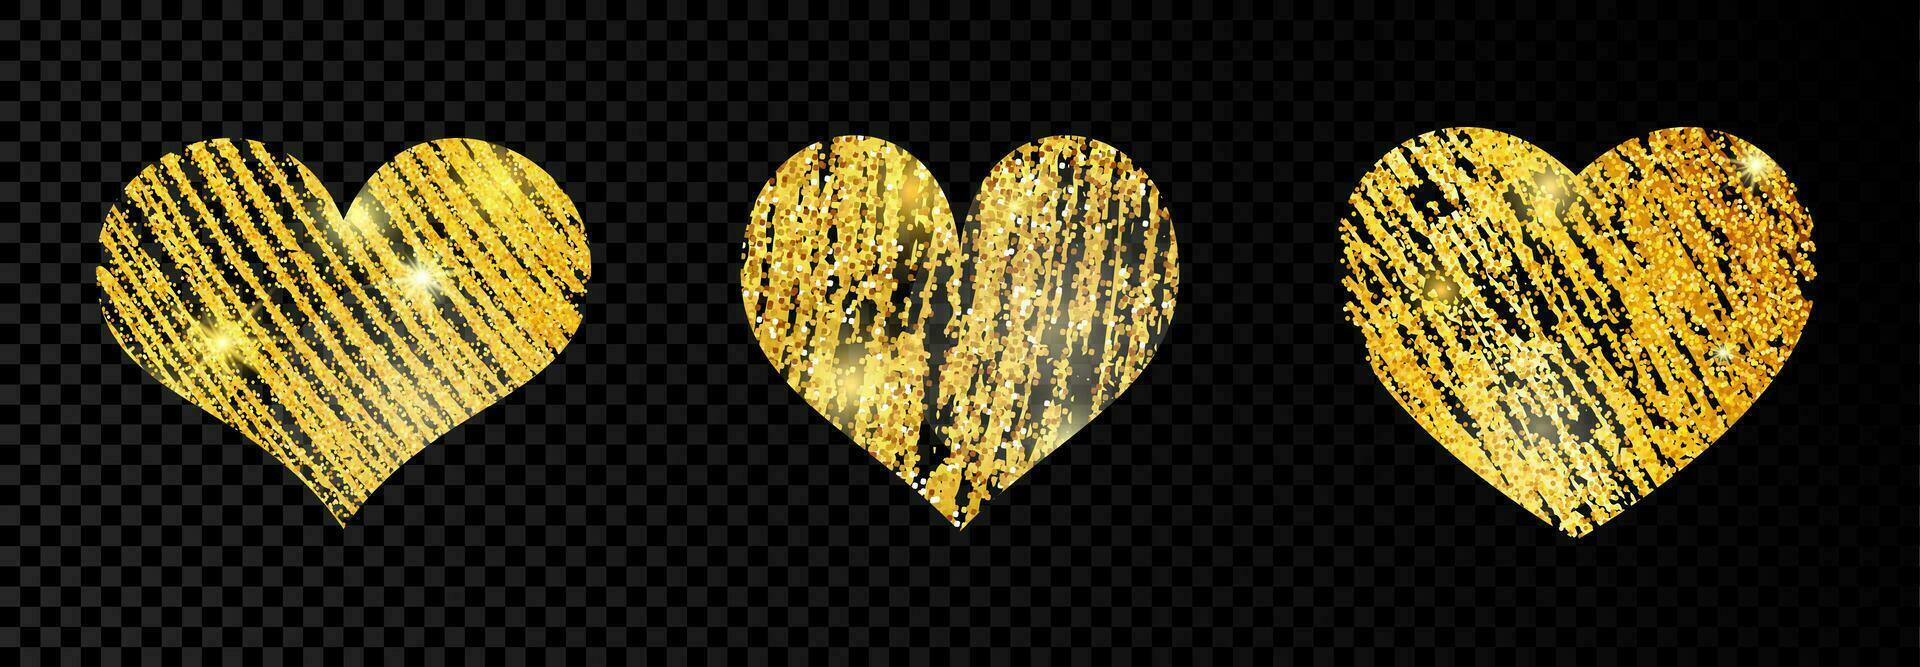 reeks van drie hart met goldens glinsterende kattebelletje verf Aan donker transparant achtergrond. achtergrond met goud sparkles en schitteren effect. leeg ruimte voor uw tekst. vector illustratie